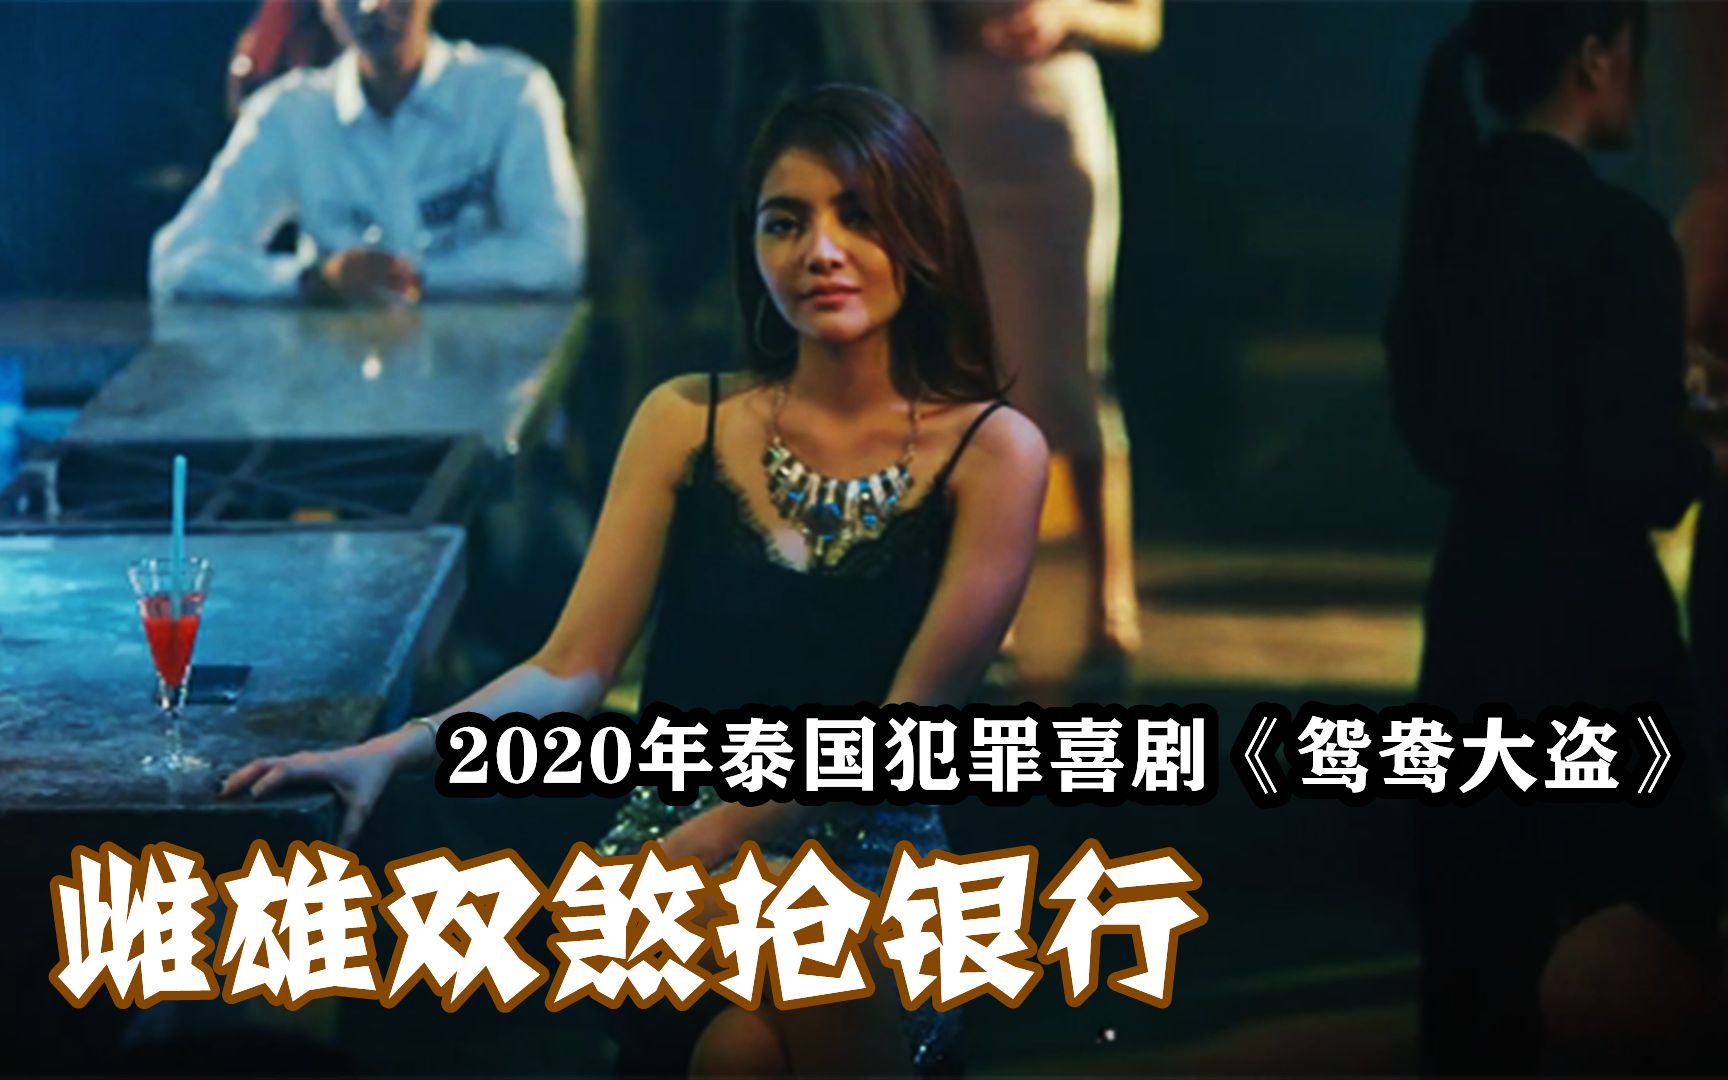 2020年泰国犯罪喜剧片，雌雄大盗抢劫银行，结果碰到真劫匪